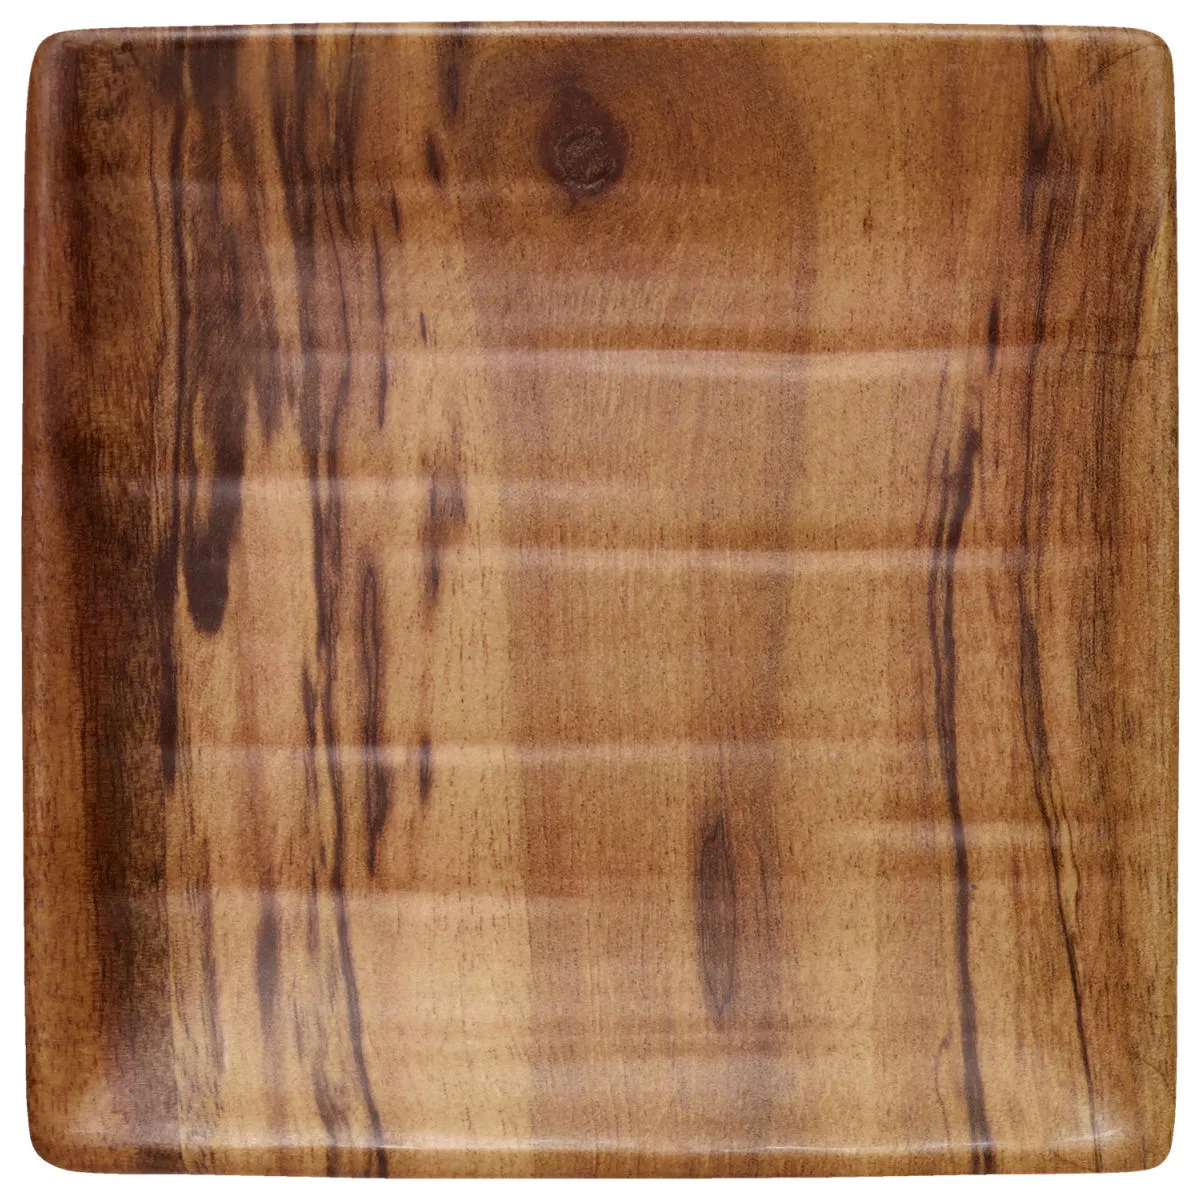 Piatto Grenada quadrato VEGA; 15x15x1.5 cm (LxLxH); acacia marrone; quadrata; 10 pz. / confezione